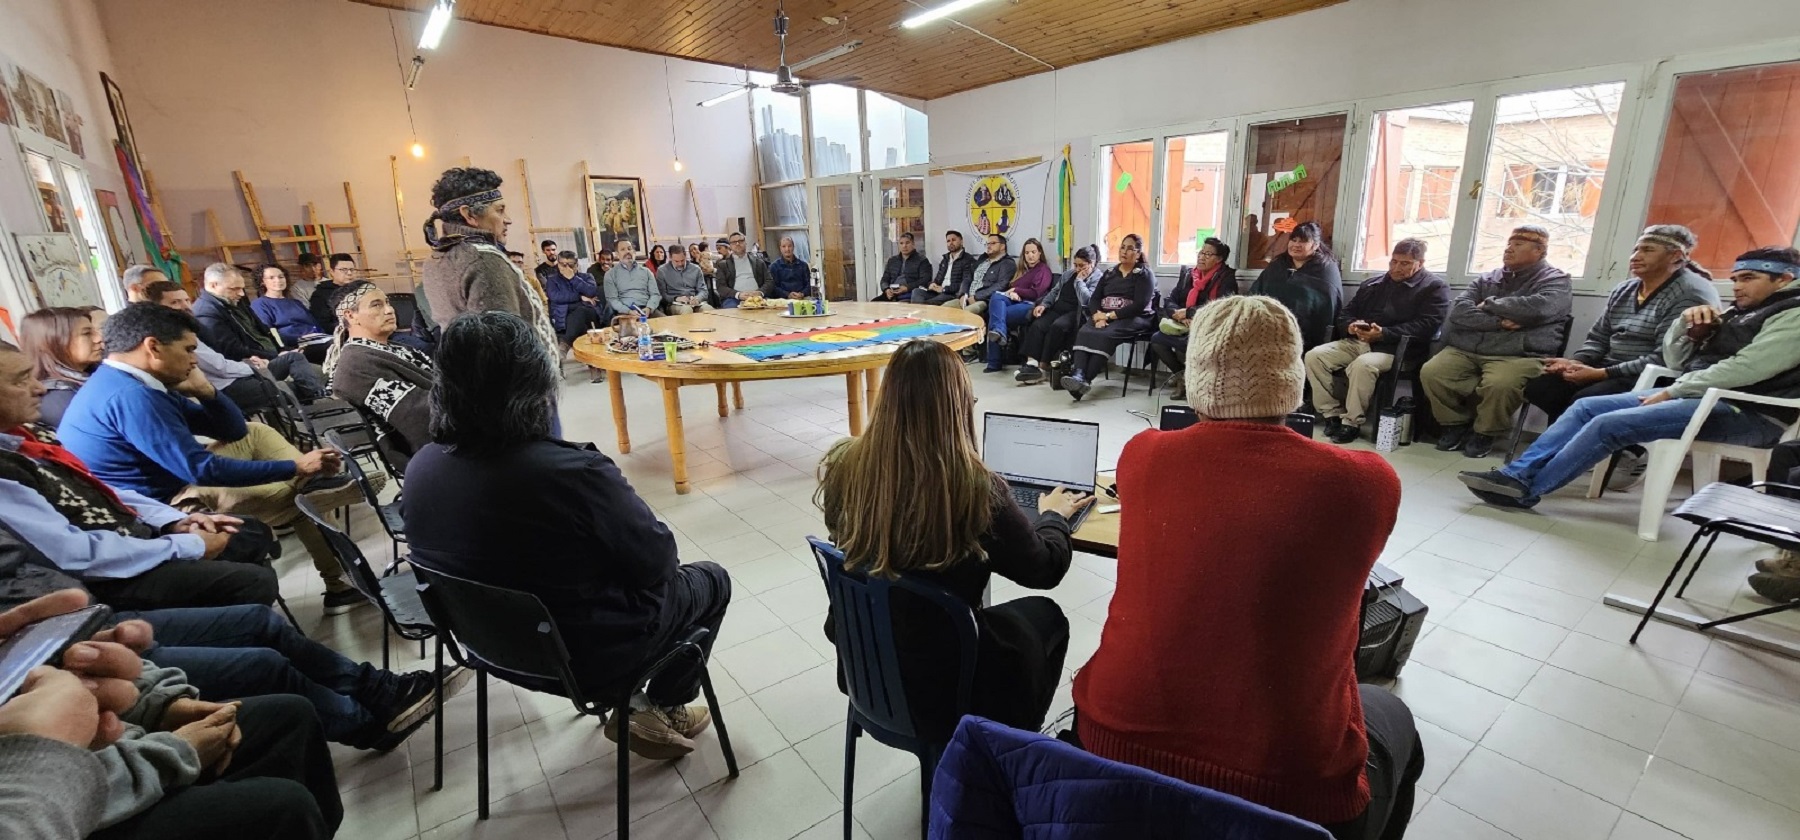 Al encuentro también estaban invitados funcionarios del Gobierno nacional. Foto: Confederación Mapuche de Neuquén.